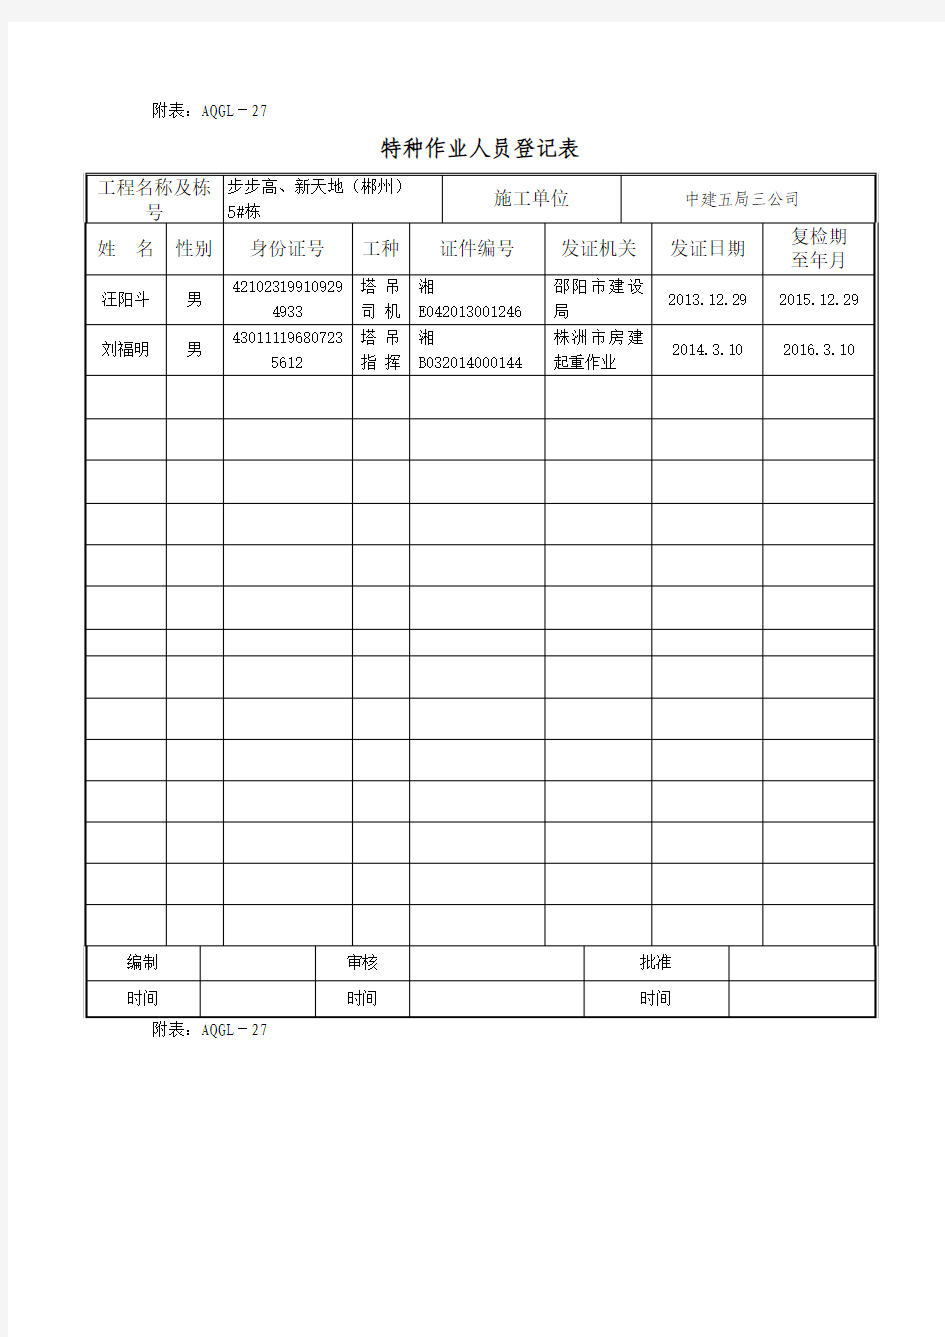 特种作业人员登记表(2017.2.28模板)